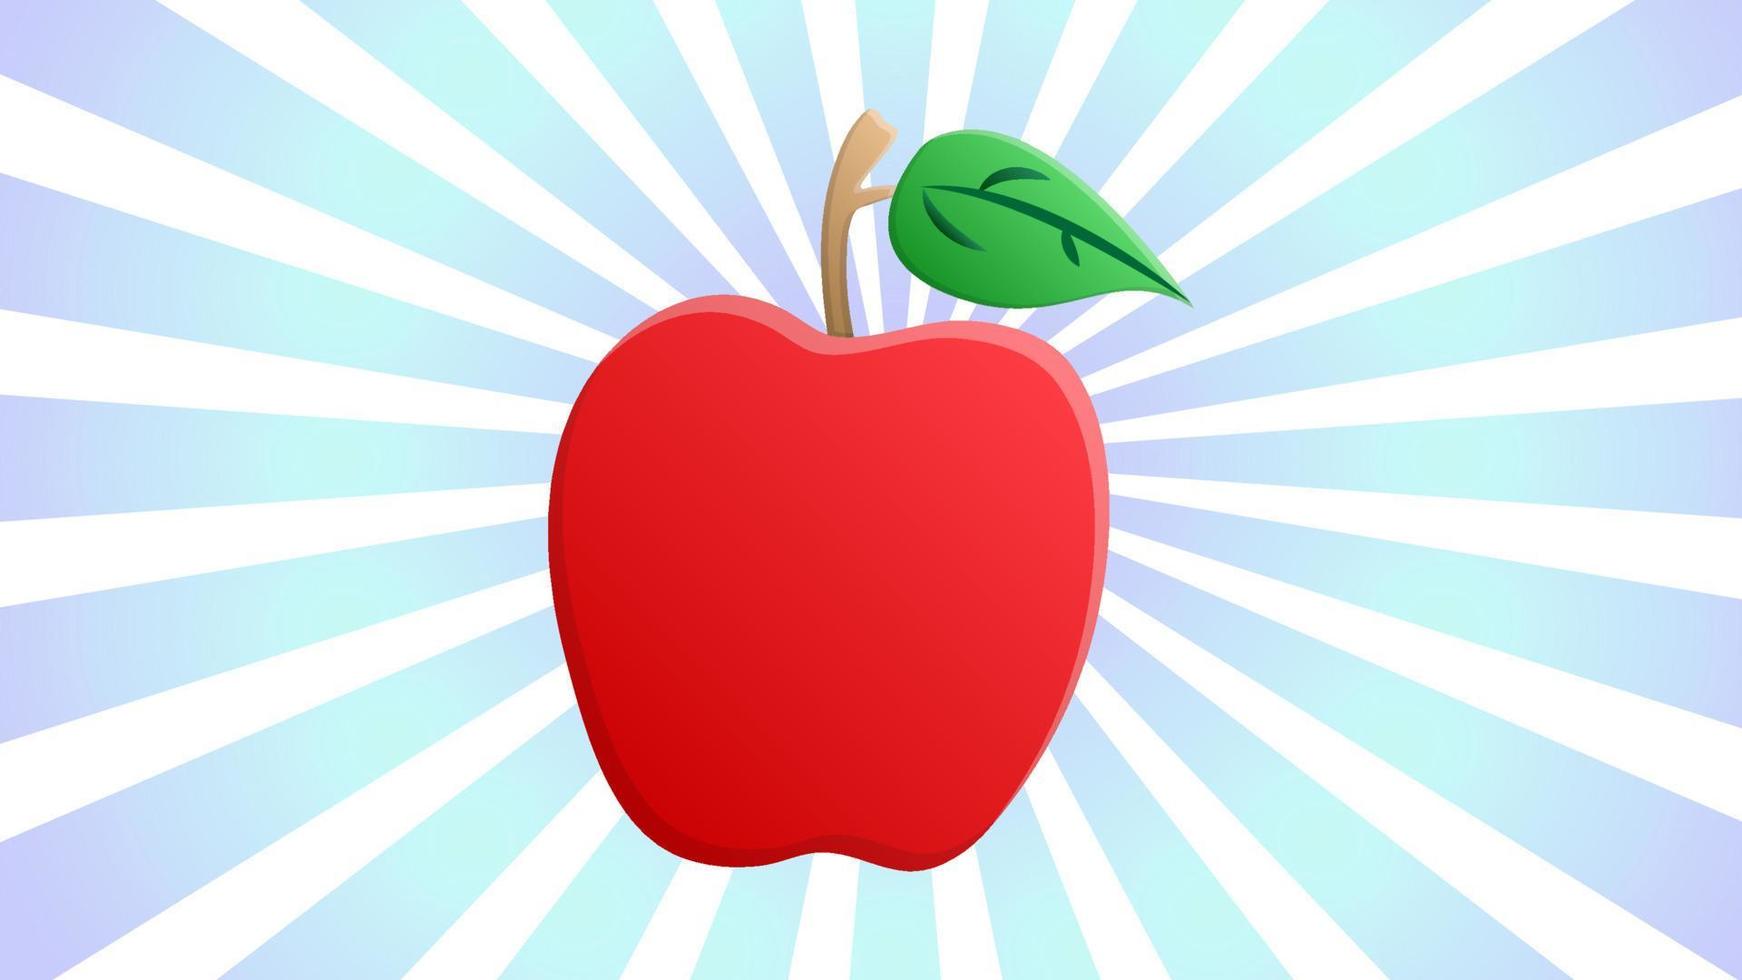 manzana de color rojo sobre un fondo retro blanco y azul, ilustración vectorial. fruta para comer. comida saludable, comida dietética, comida vegana, dieta de alimentos crudos. manzana con hoja verde encima vector